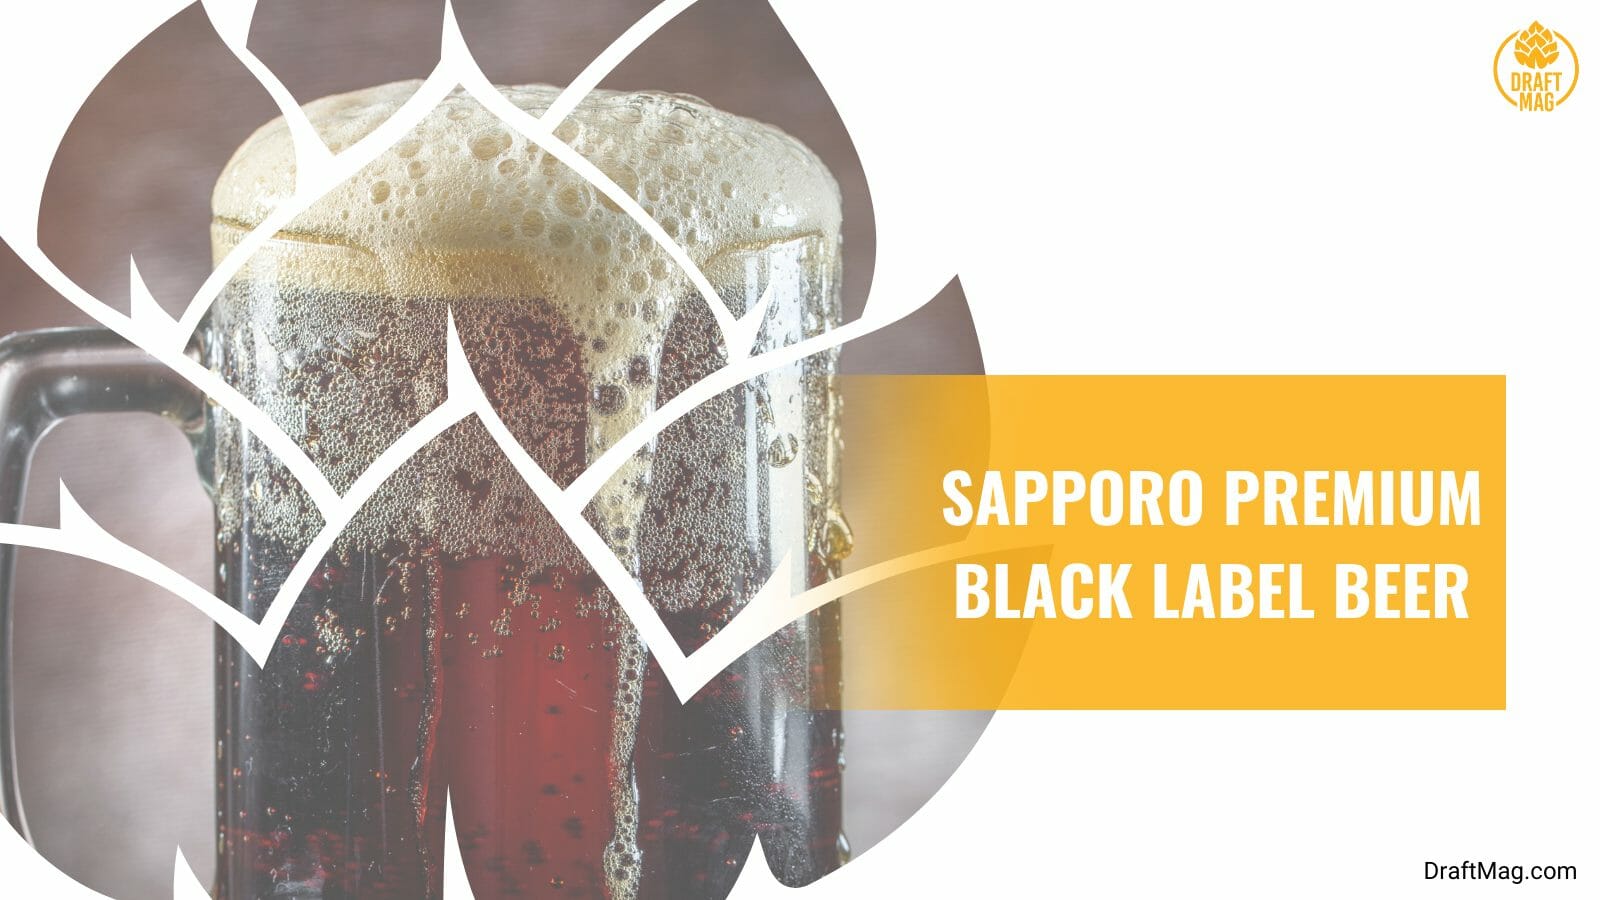 Sapporo Premium Black Label Beer